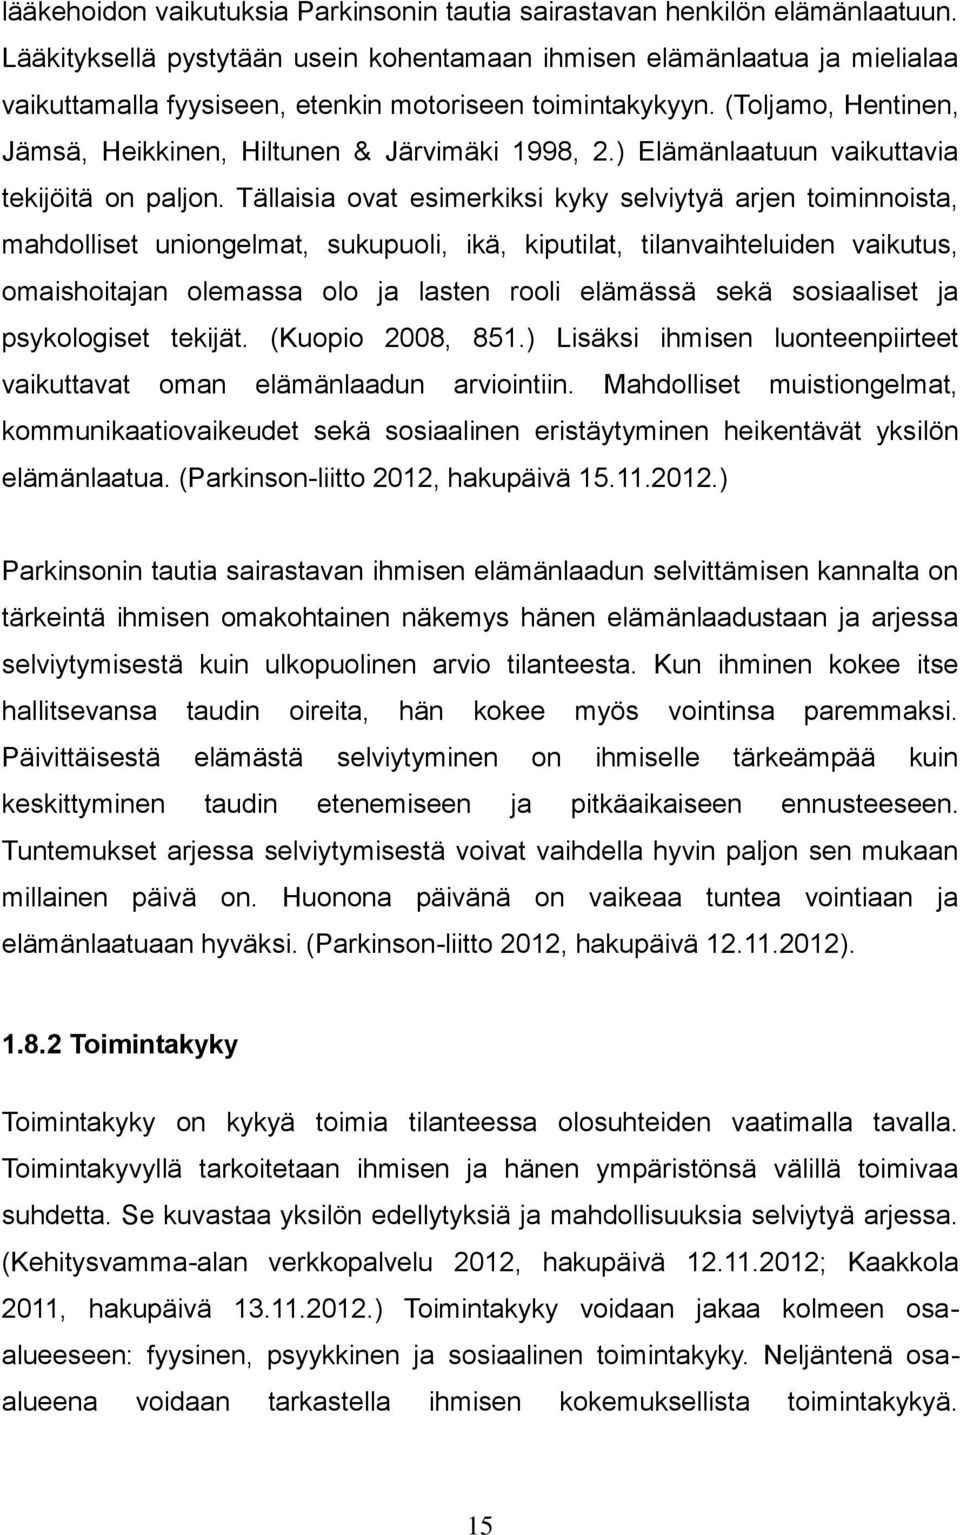 (Toljamo, Hentinen, Jämsä, Heikkinen, Hiltunen & Järvimäki 1998, 2.) Elämänlaatuun vaikuttavia tekijöitä on paljon.